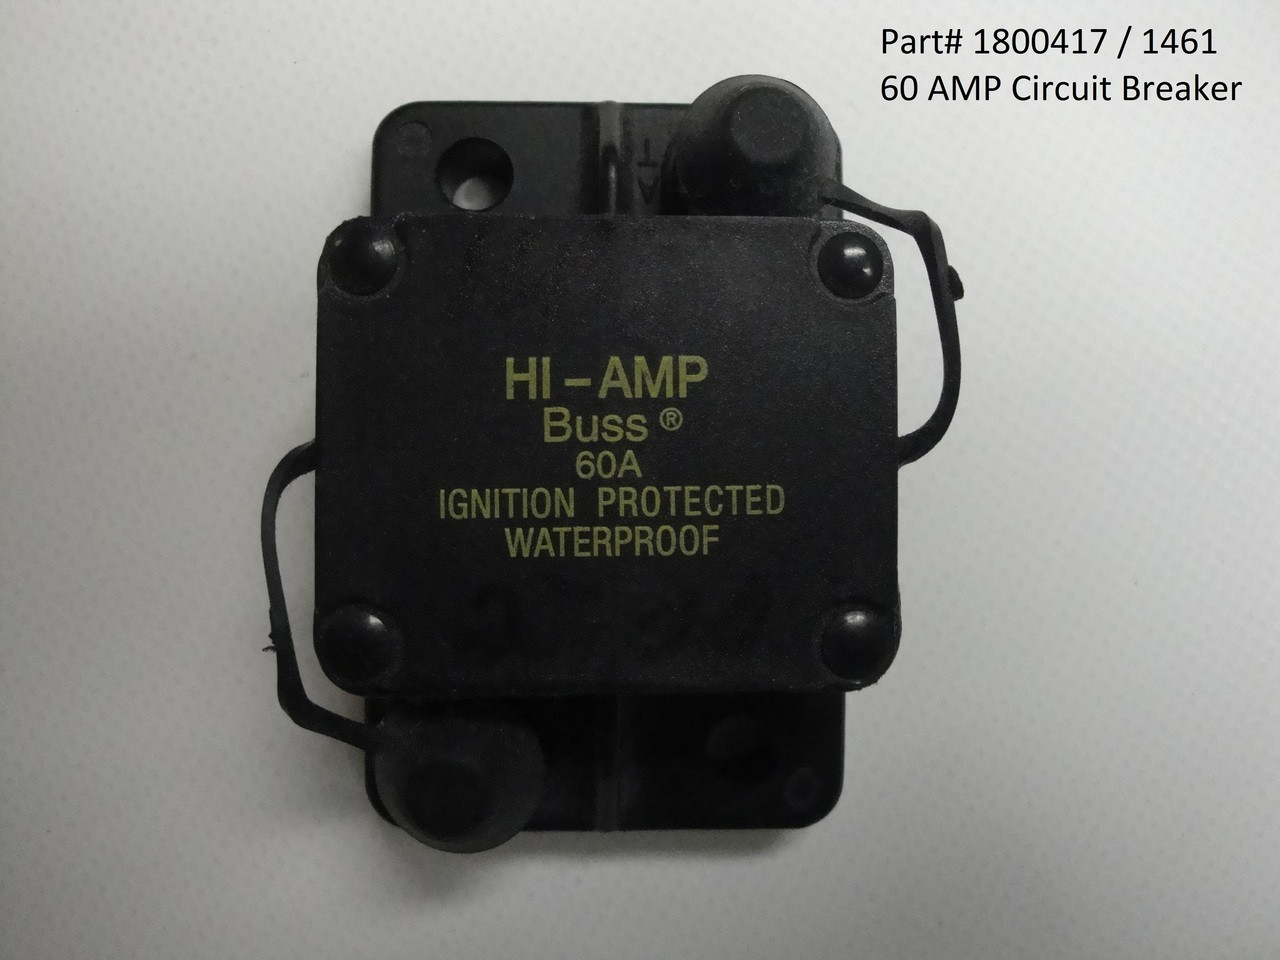 Circuit Breaker, 60 Amp (20-1461/1800417)